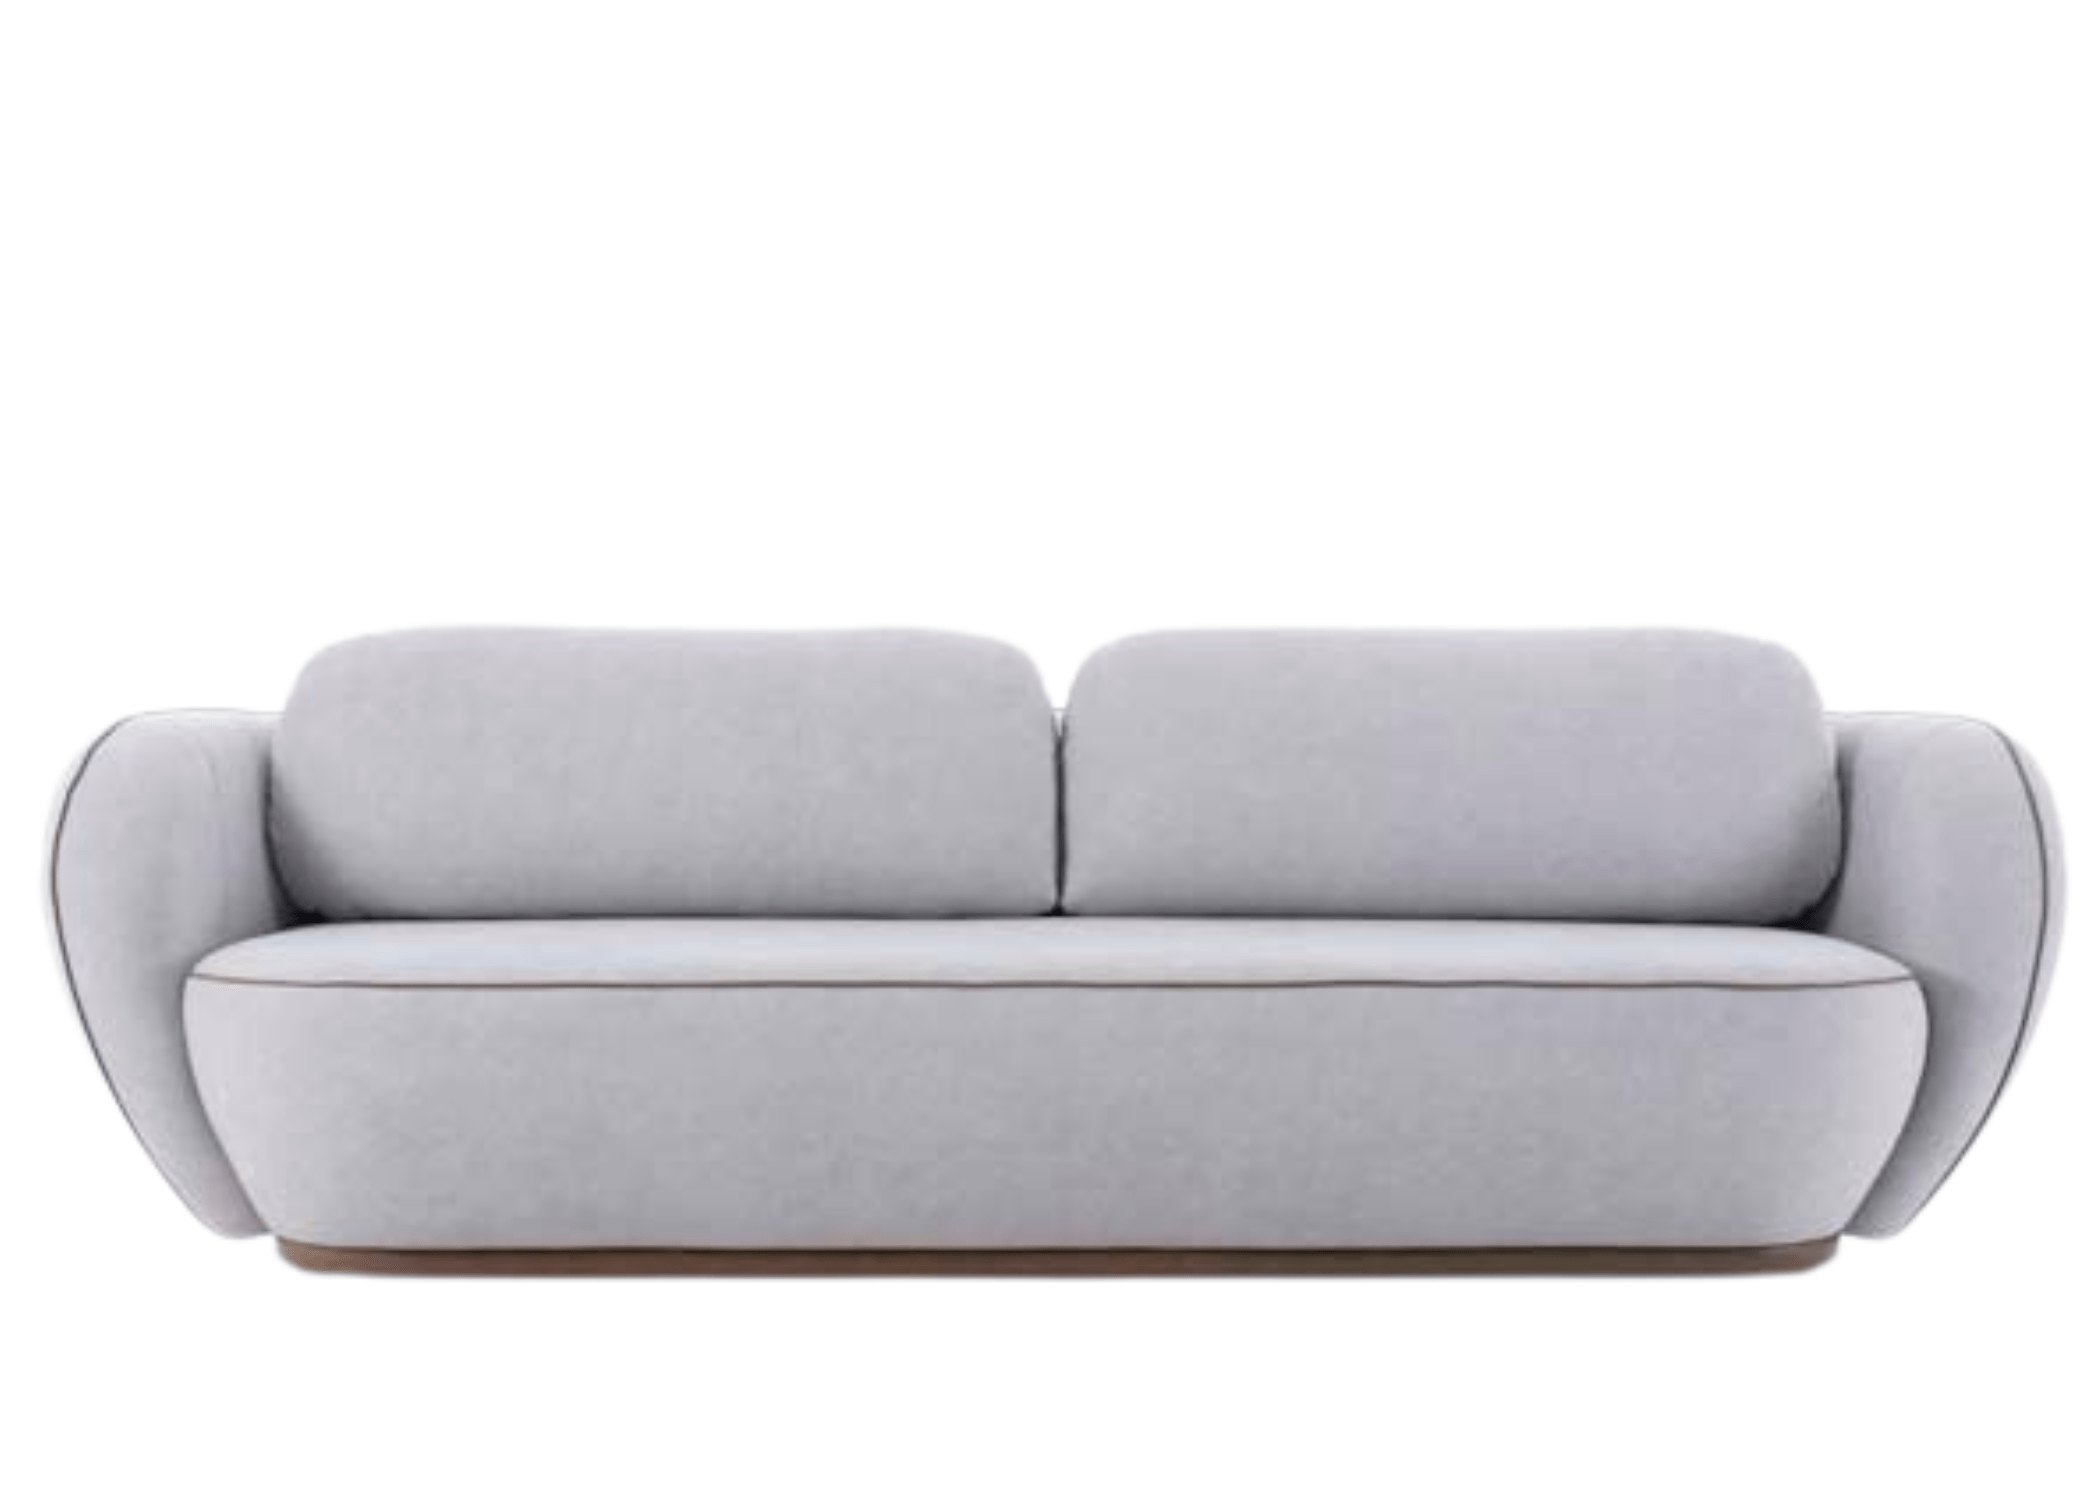 Frente do sofá Toby, com linhas suaves e design contemporâneo.